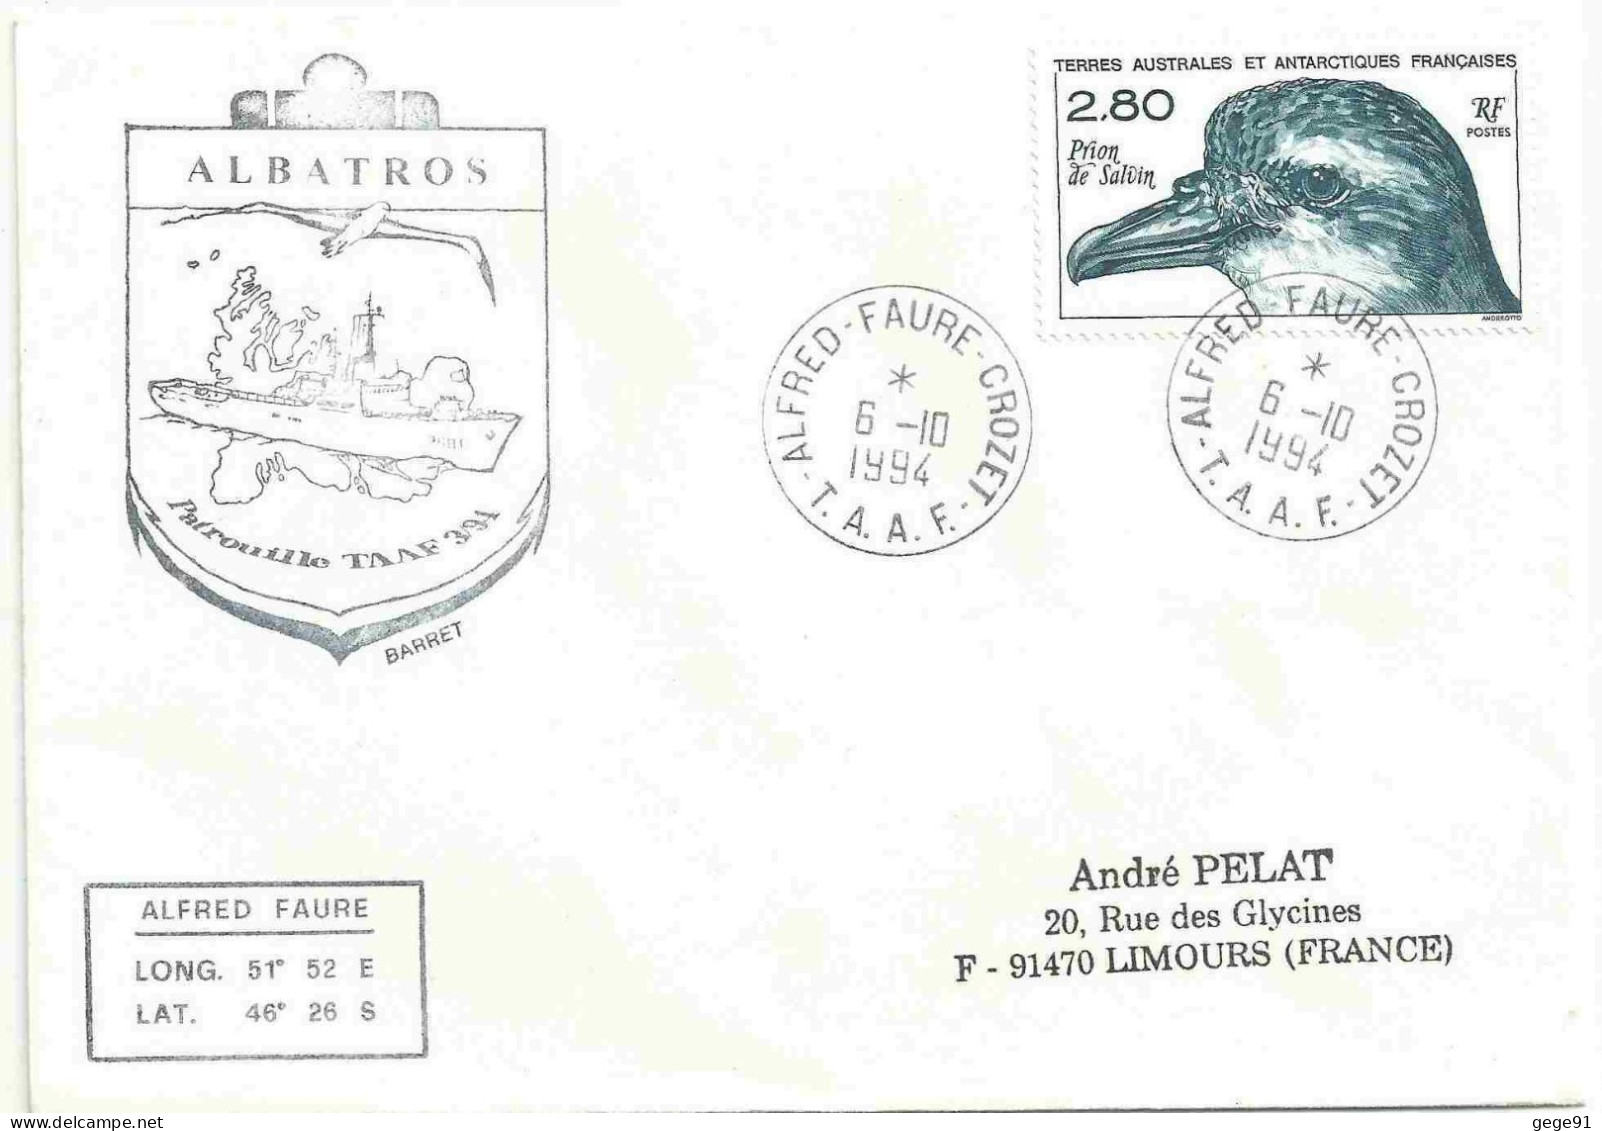 YT 189 Prion De Salvin - Posté à Bord De L'Albatros - Alfred Faure - Crozet - 06/10/1994 - Lettres & Documents